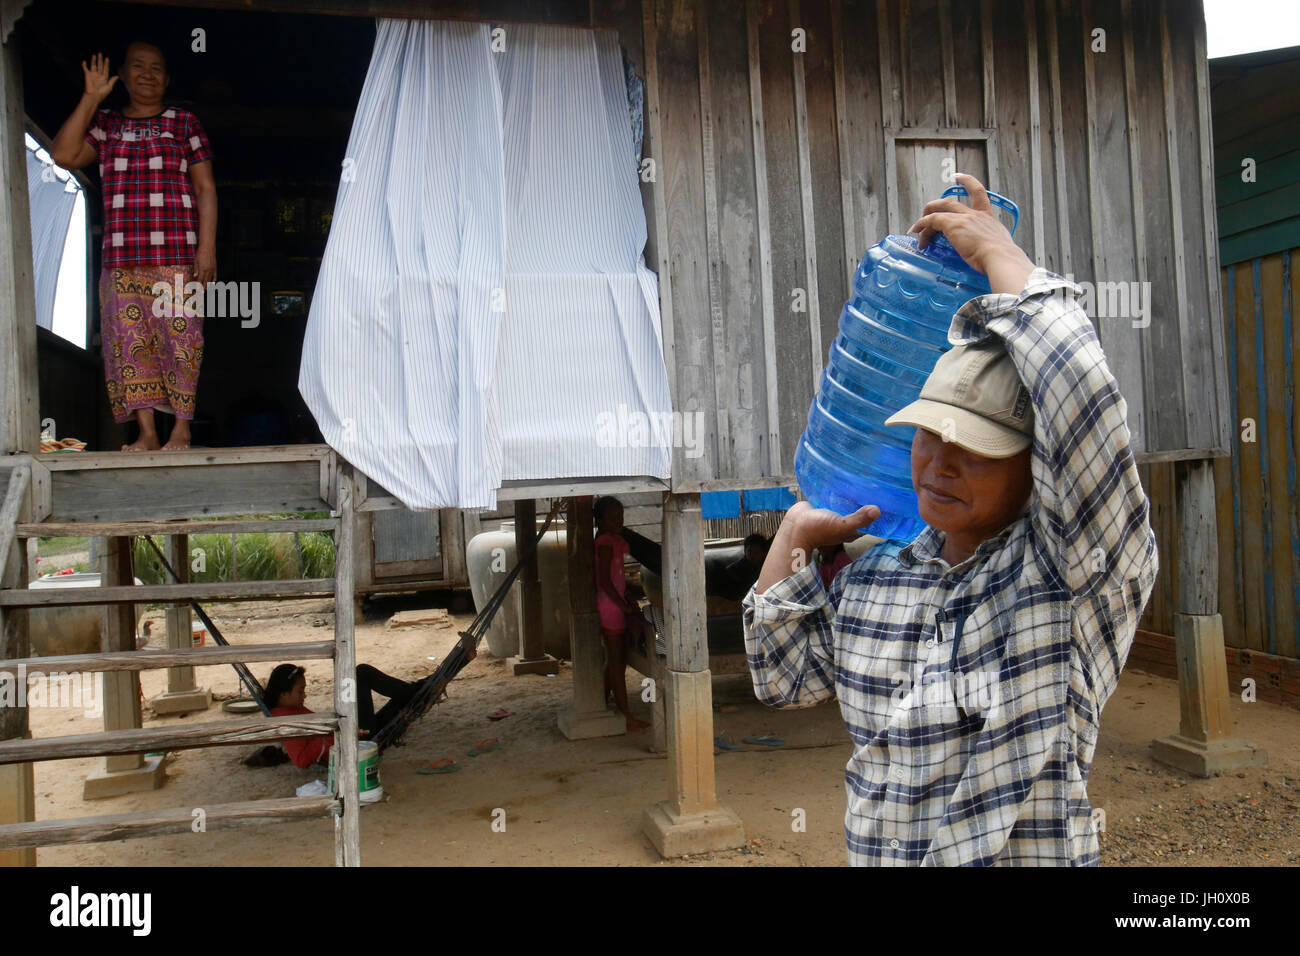 1001 Société de l'eau fontaines livraison à domicile. Le Cambodge. Banque D'Images